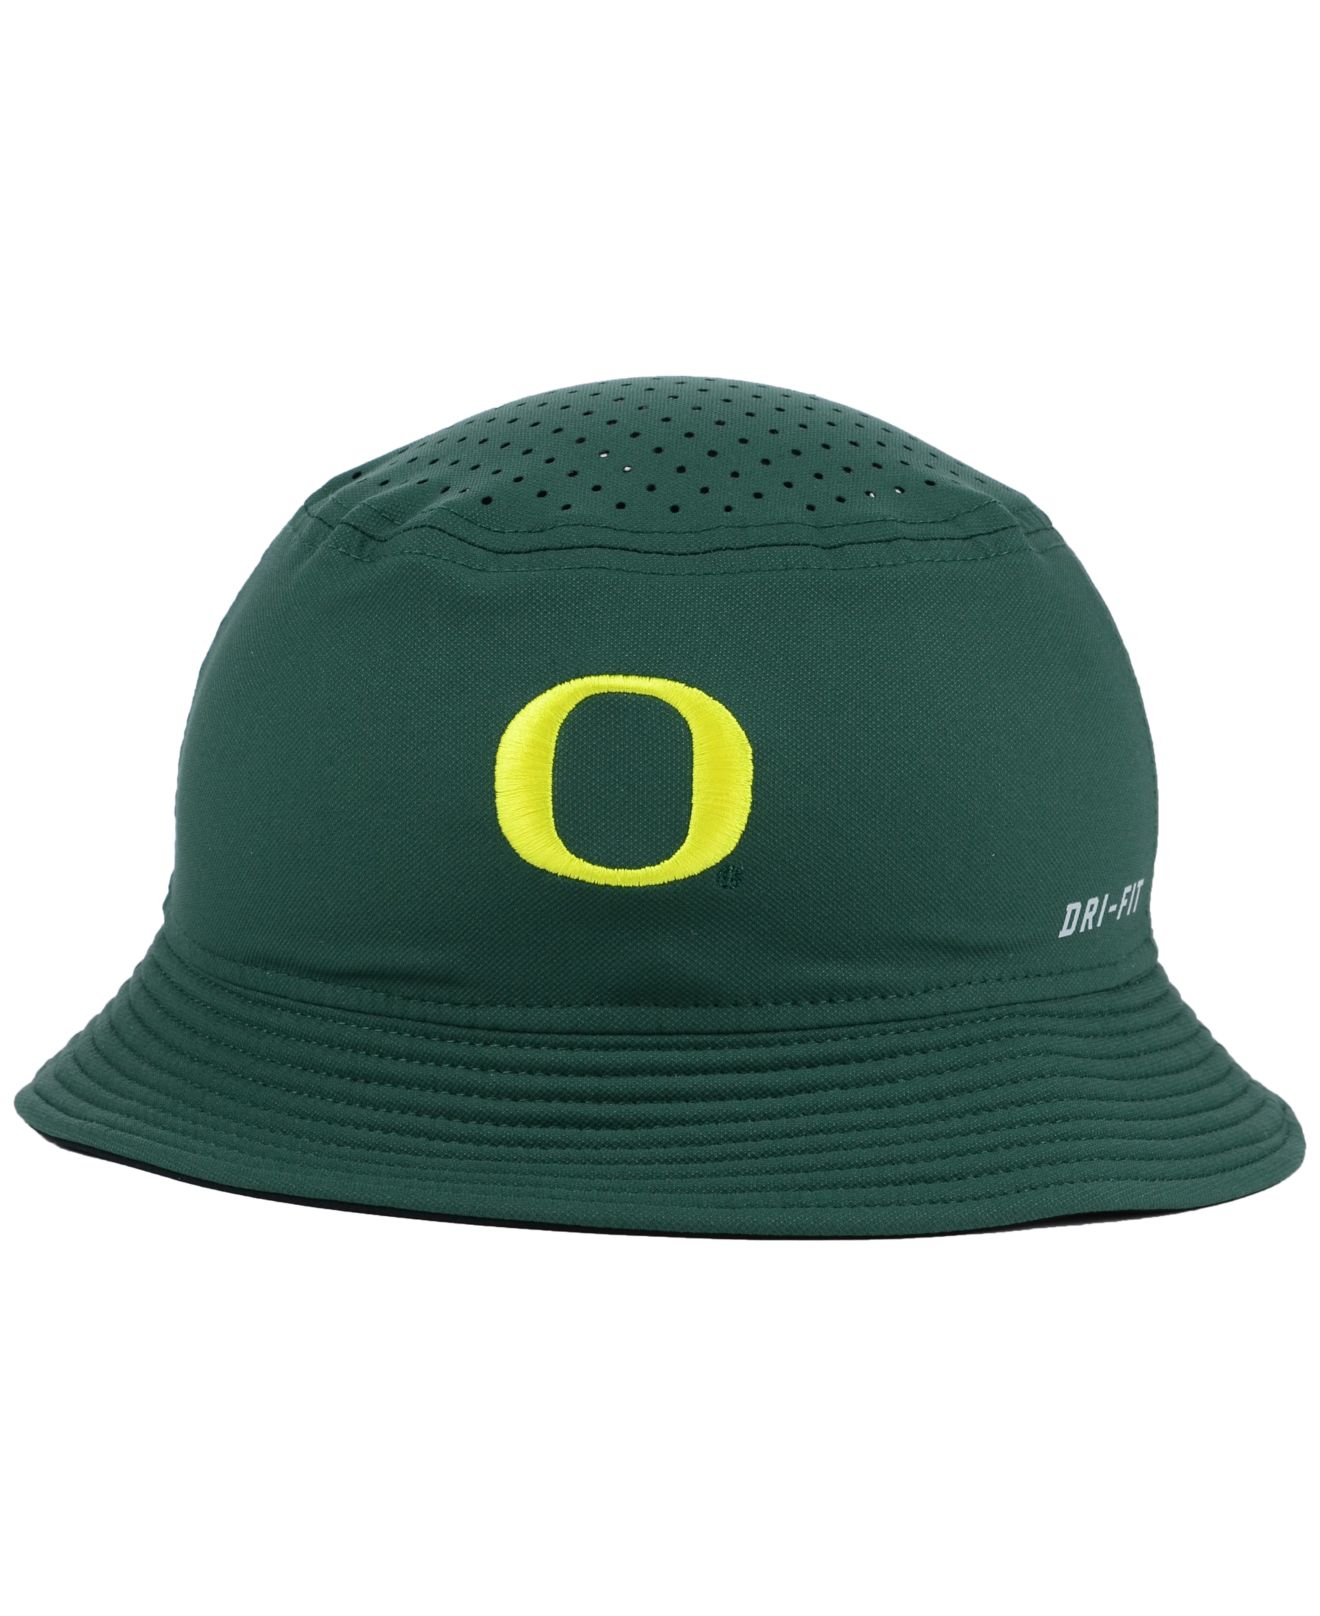 Nike Oregon Ducks Vapor Bucket Hat in Green for Men - Lyst